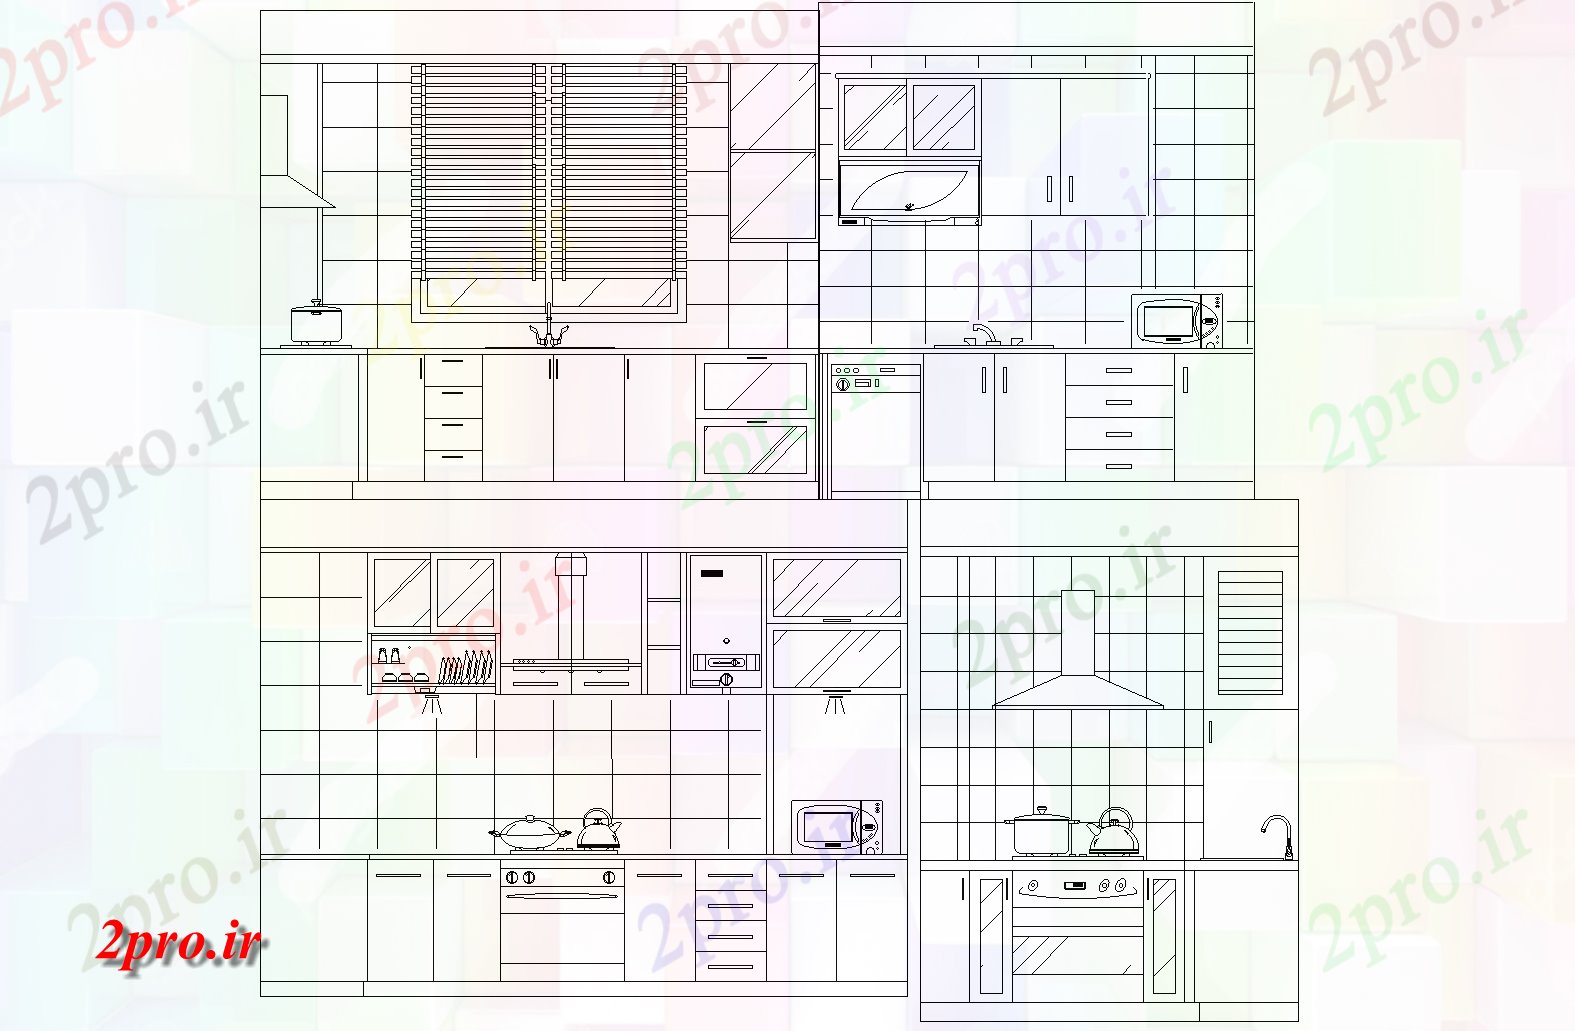 دانلود نقشه آشپزخانه آشپزخانه  طرحی جزئیات (کد73617)